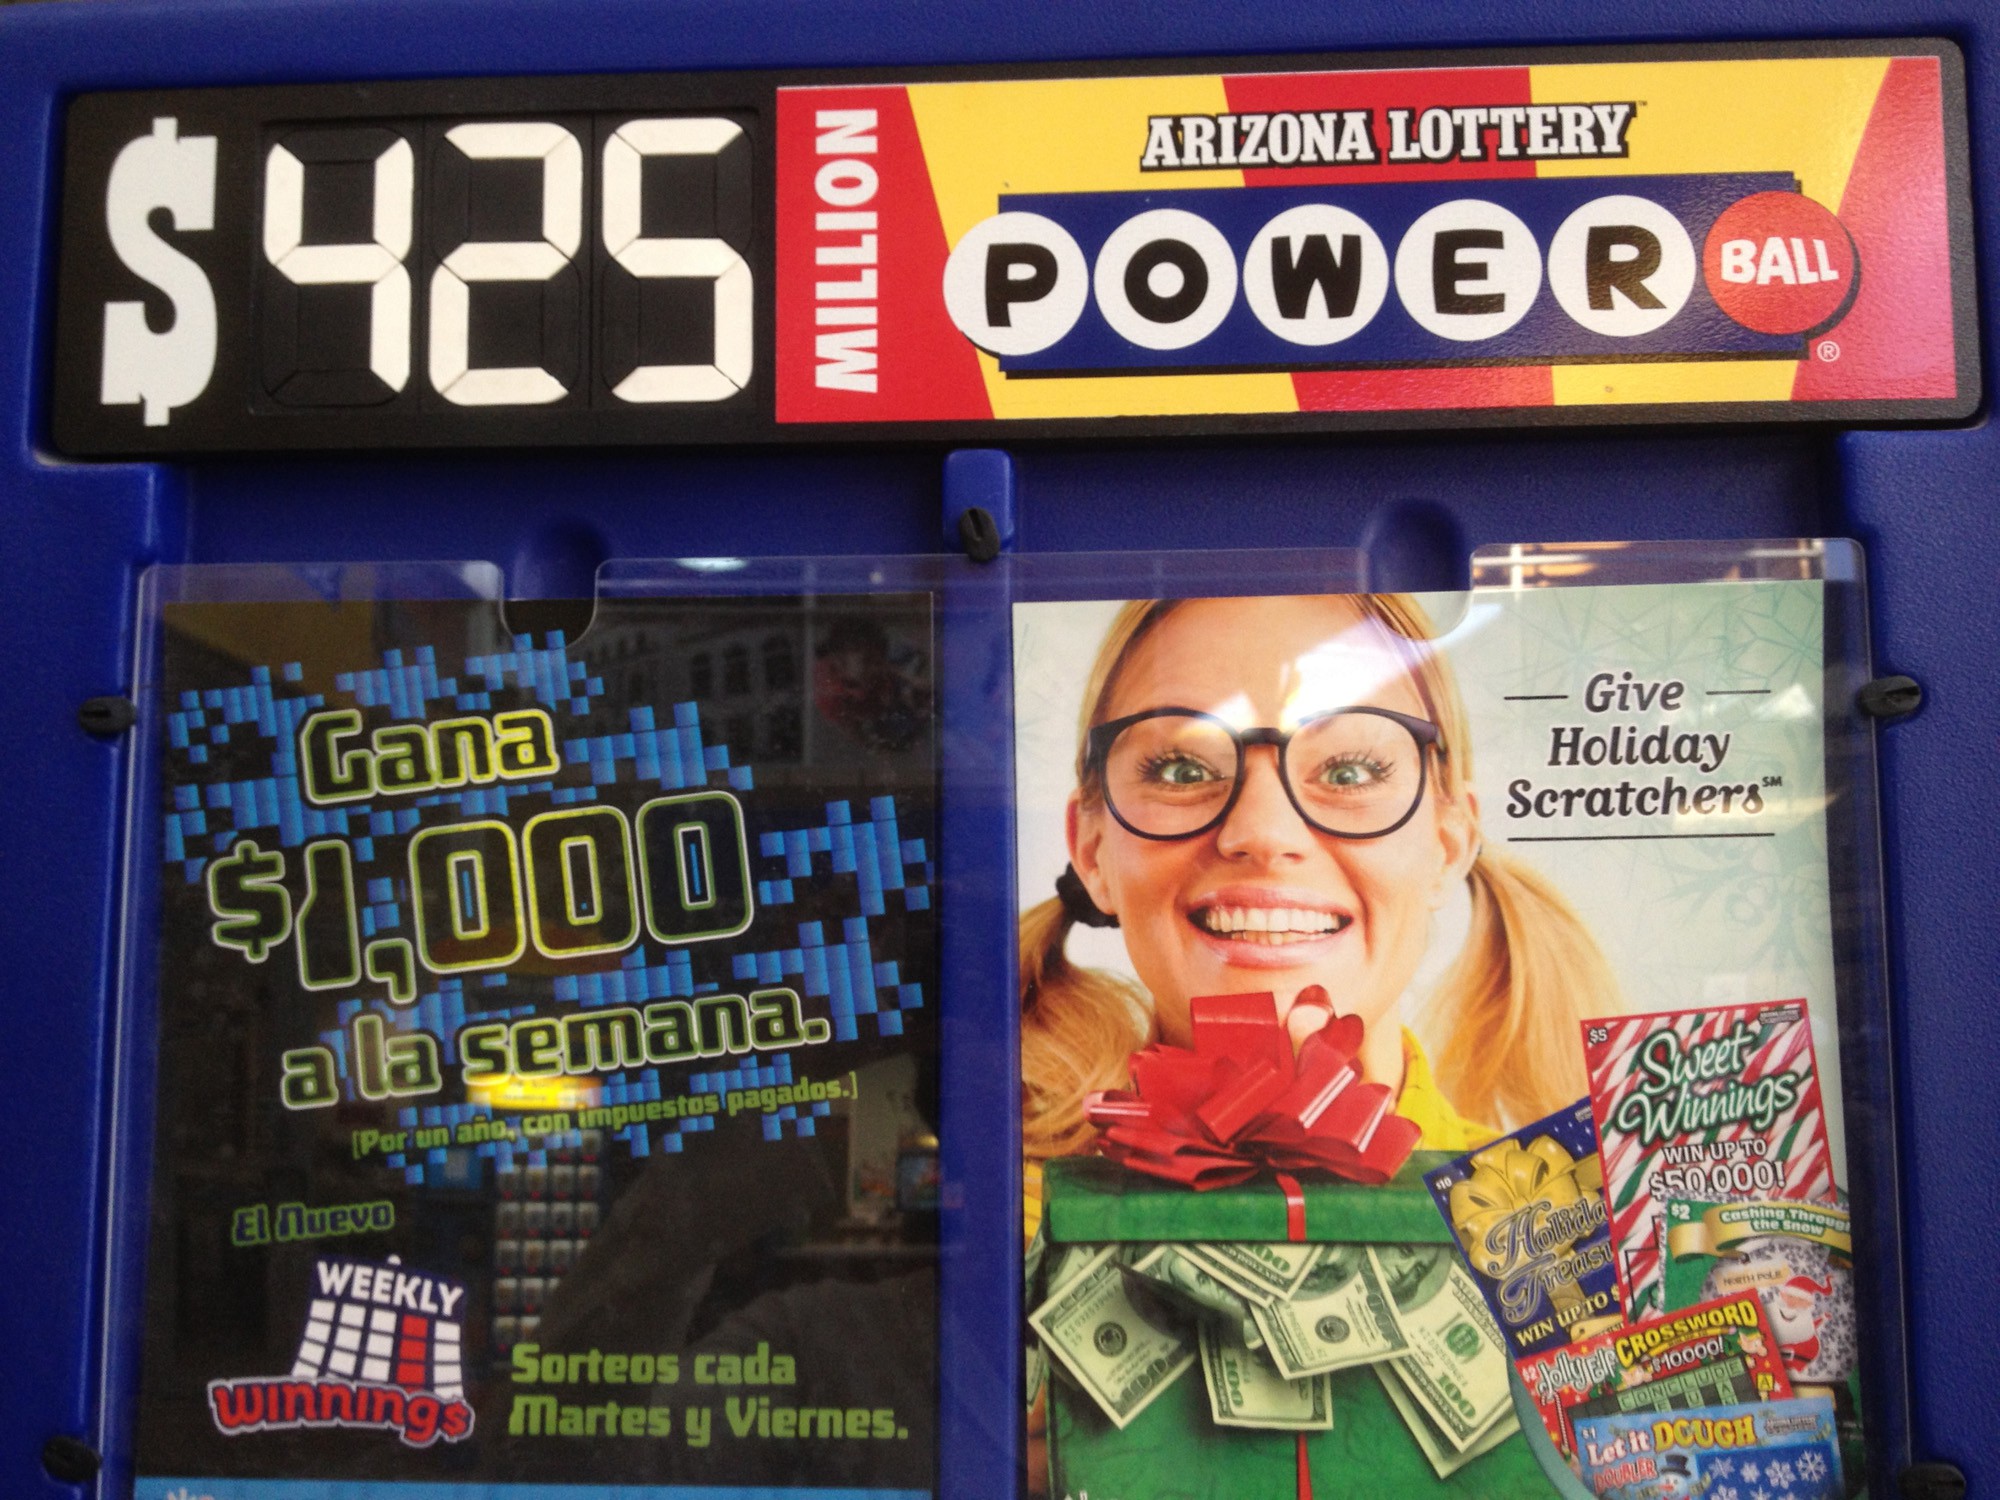 Arizona Lottery Powerball